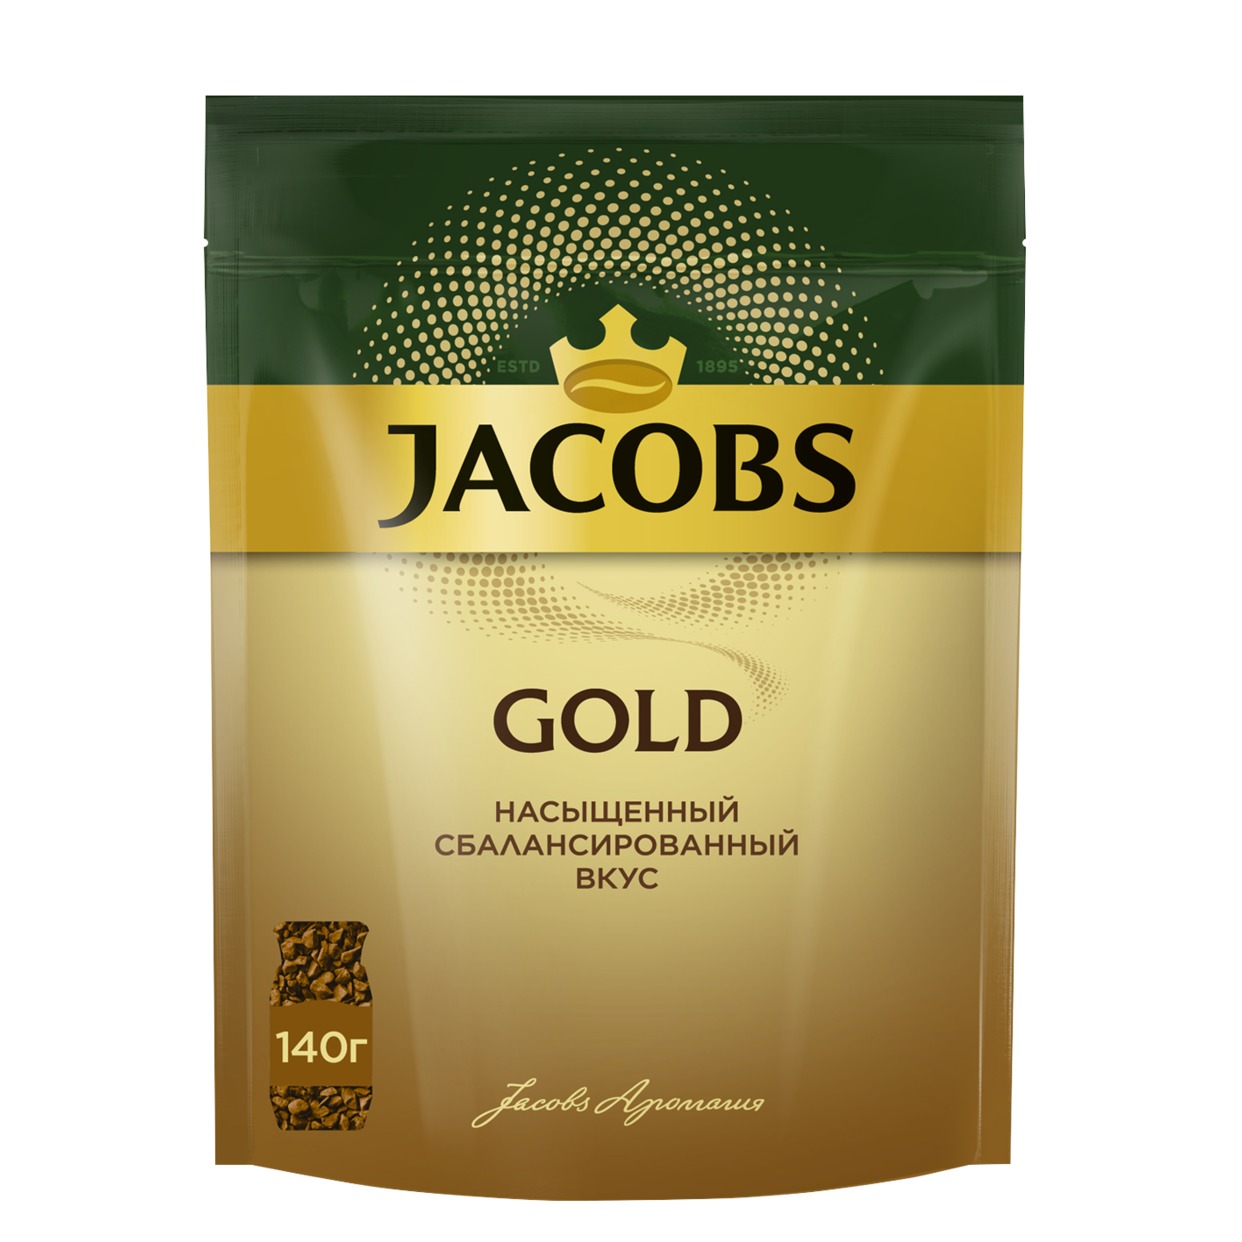 Кофе Jacobs Gold, расворимый, 140 г